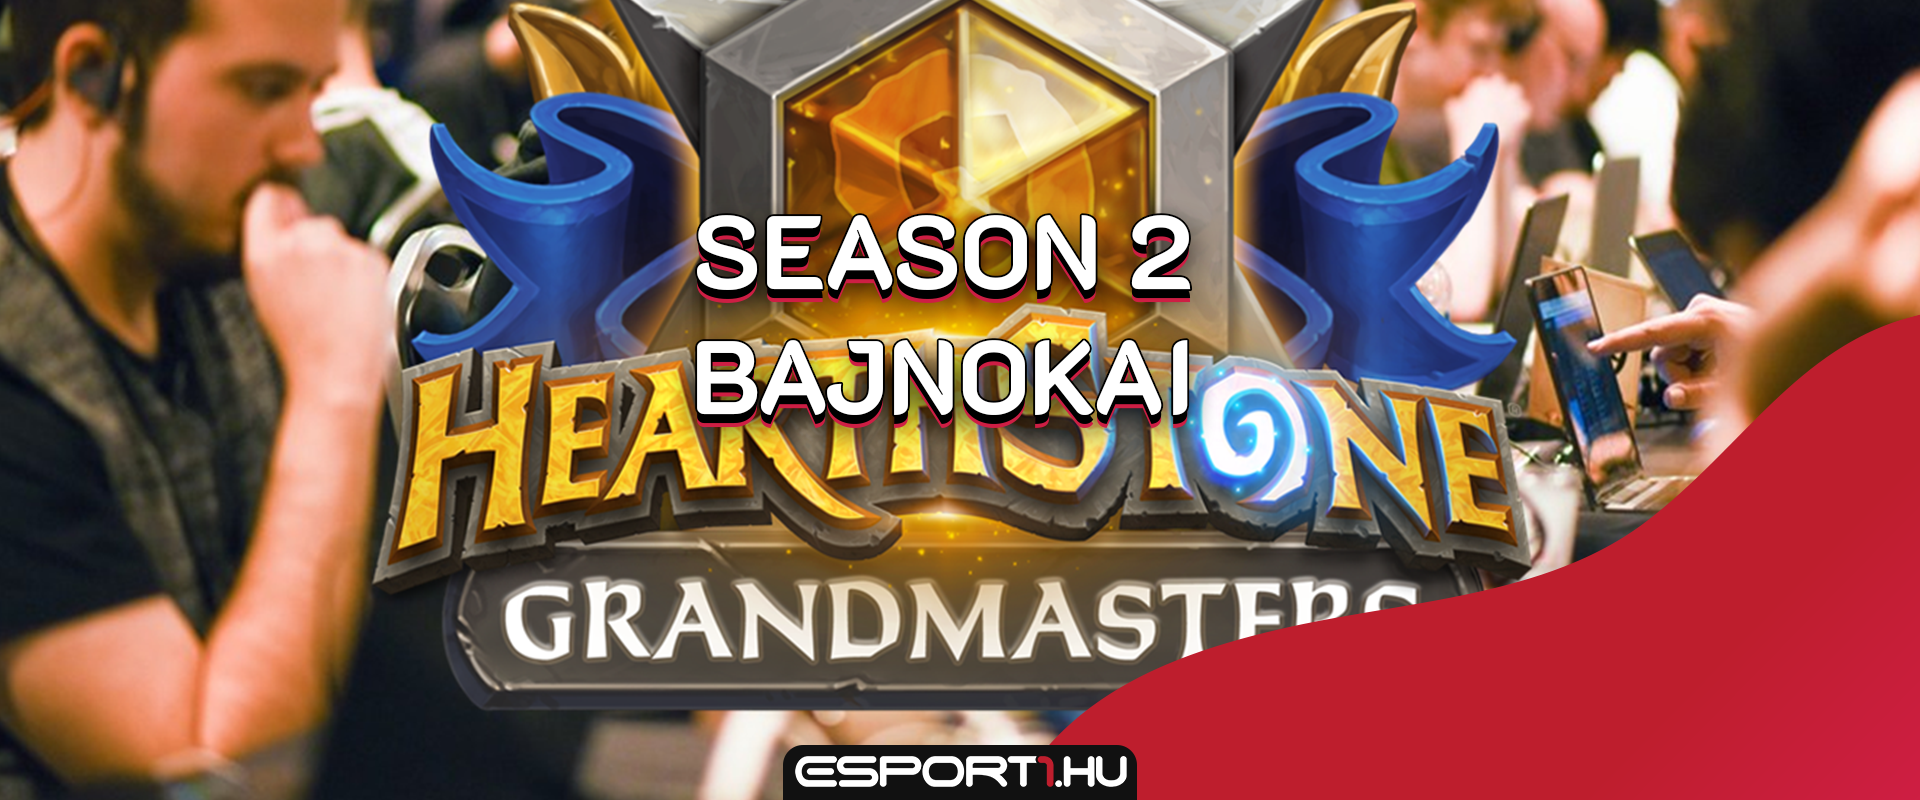 Itt vannak a Grandmasters Season 2 győztesei: ők ott lesznek a VB-n!